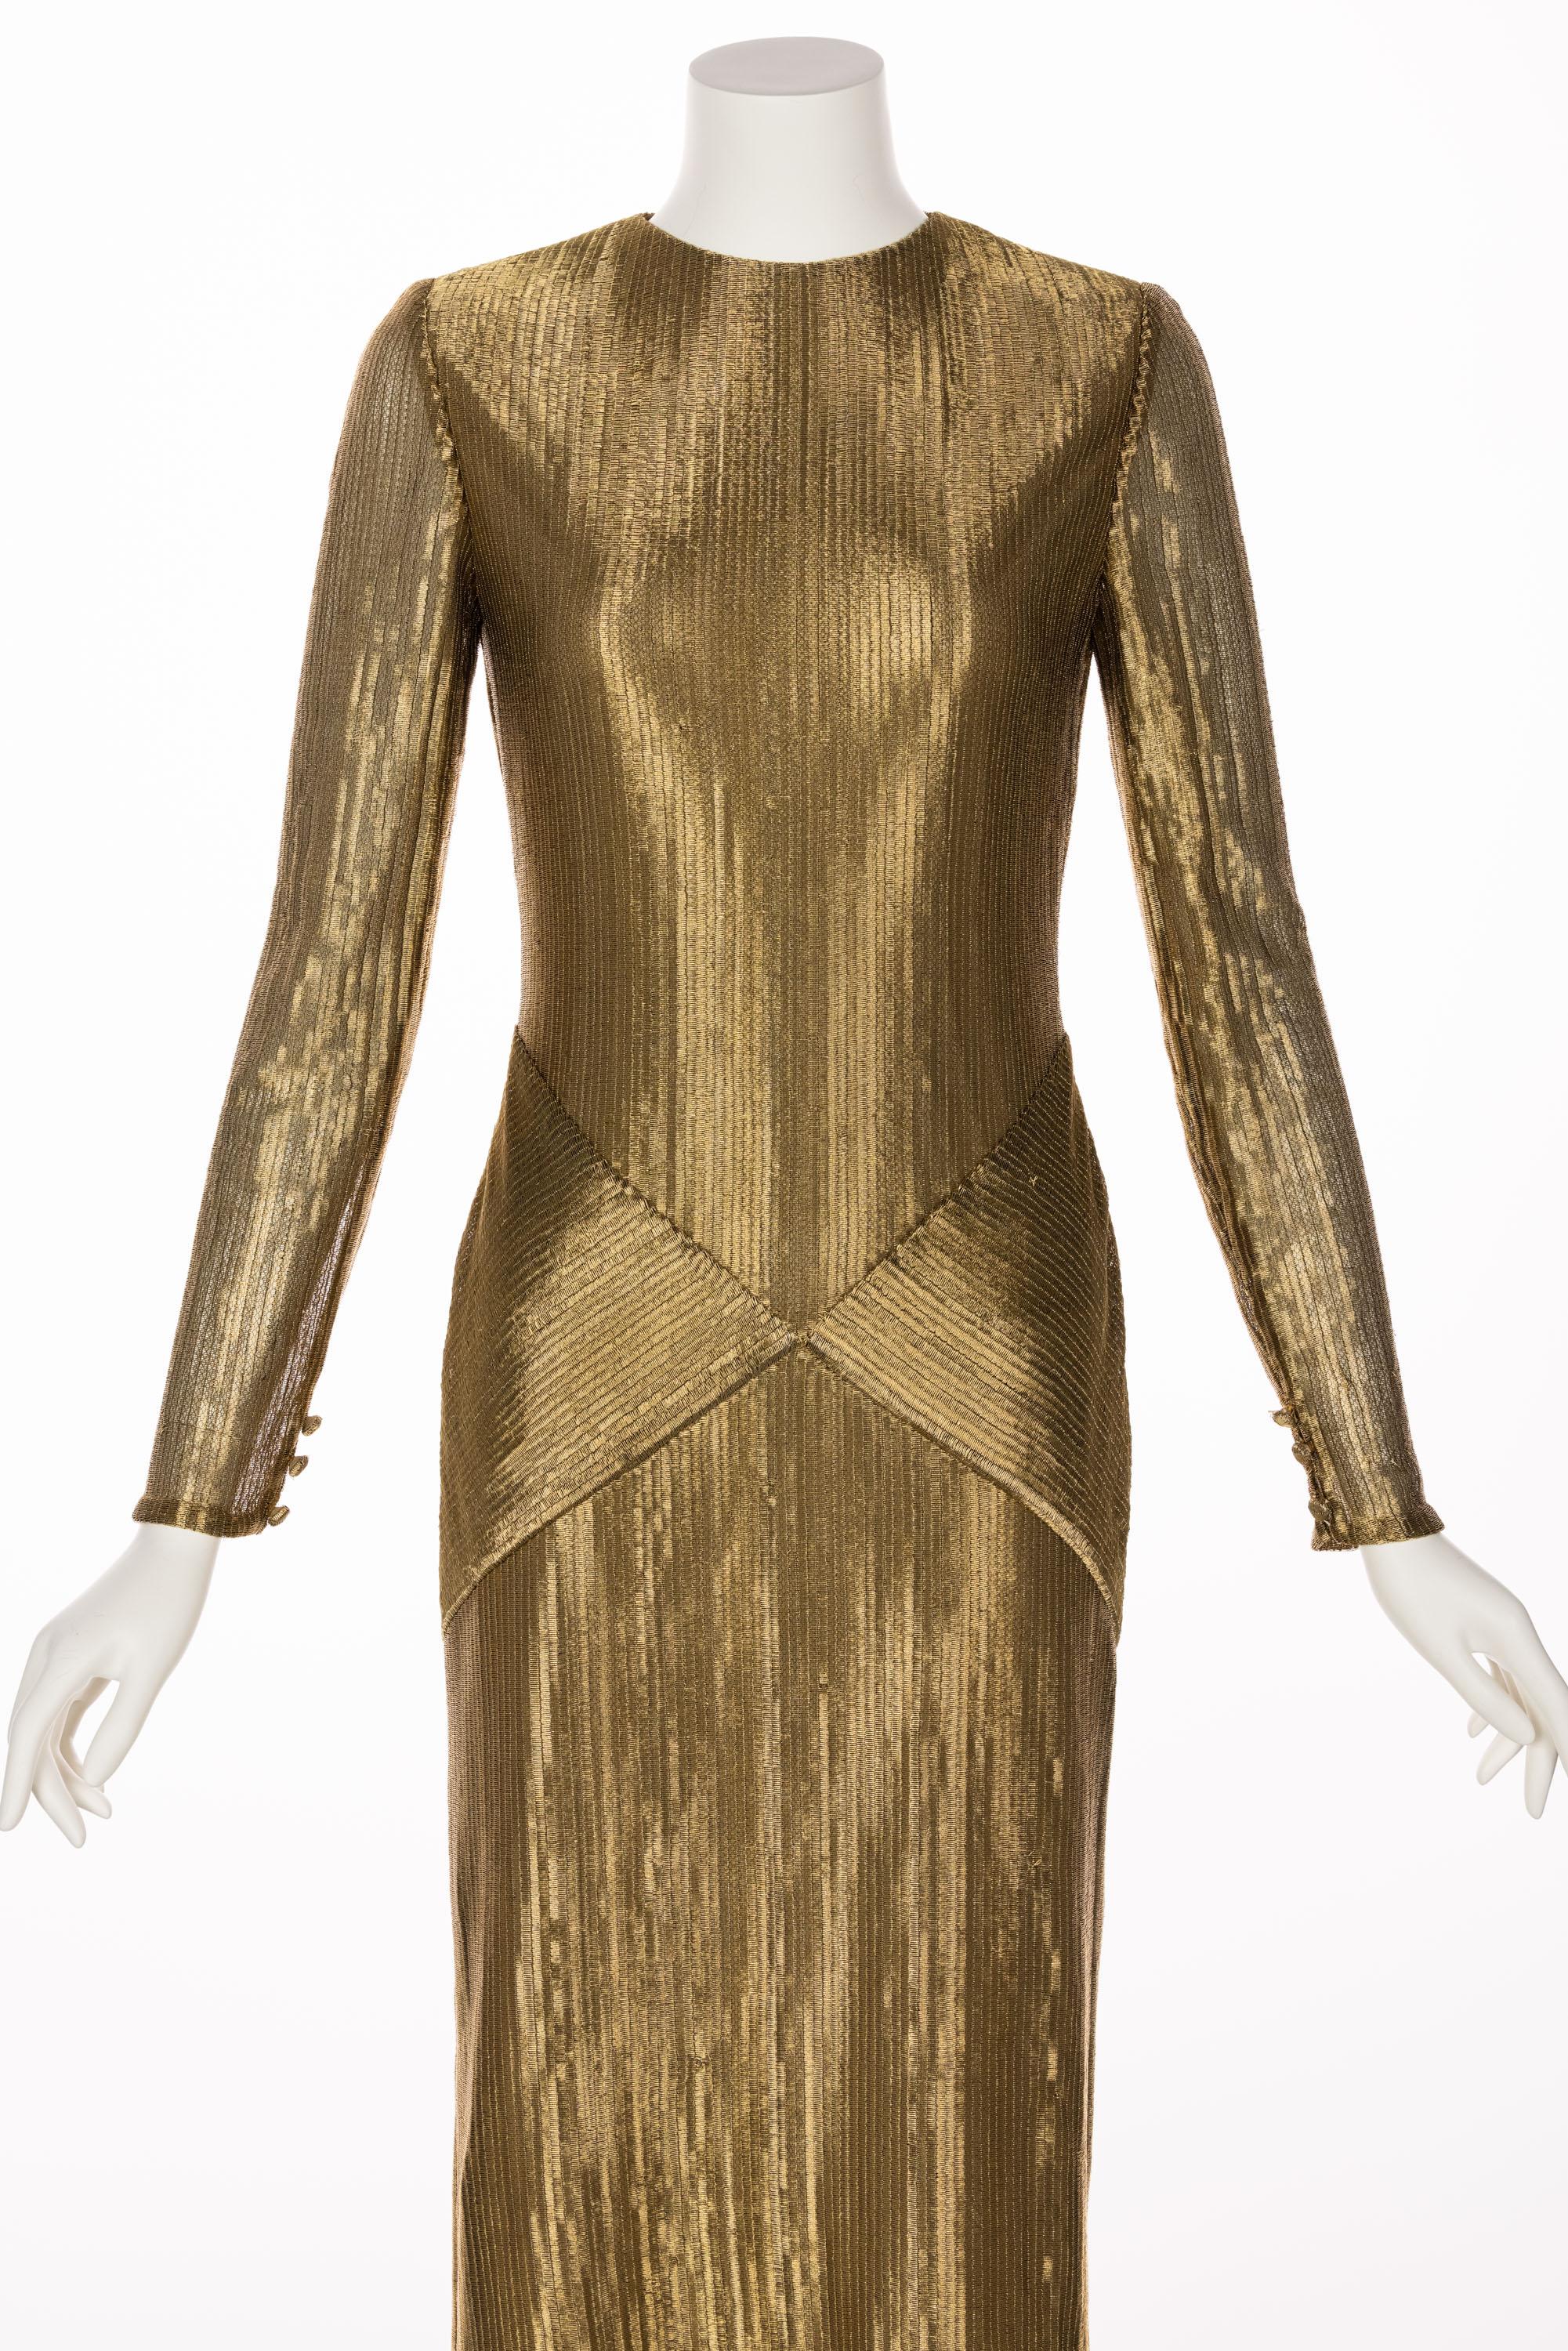 Bill Blass Gold Metal Fishtail Column Maxi Dress, 1980s 1